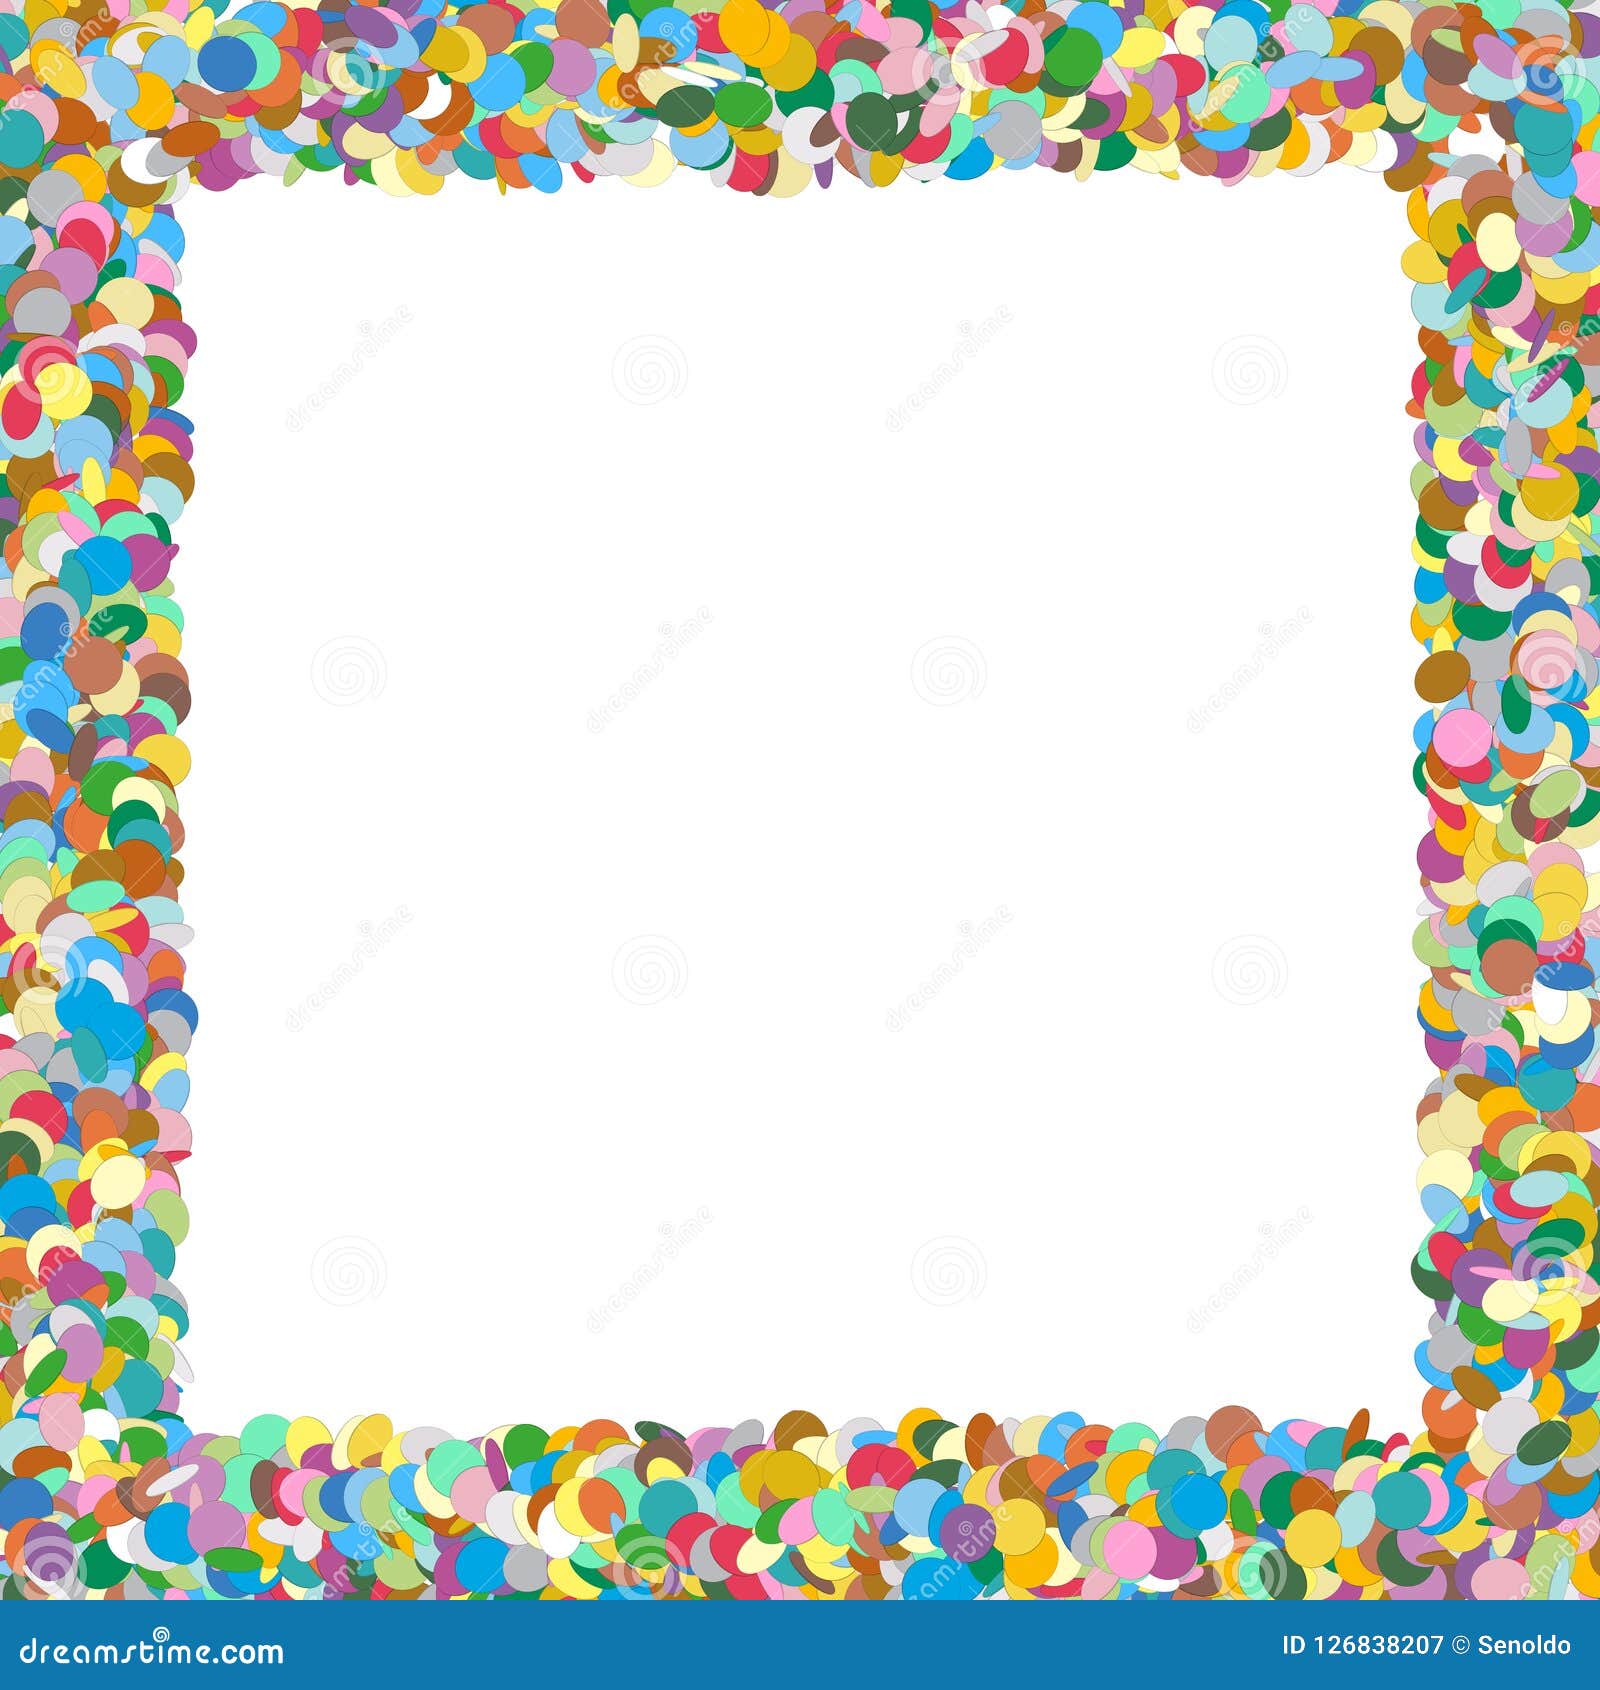 confetti border - colorful and squarish formed  